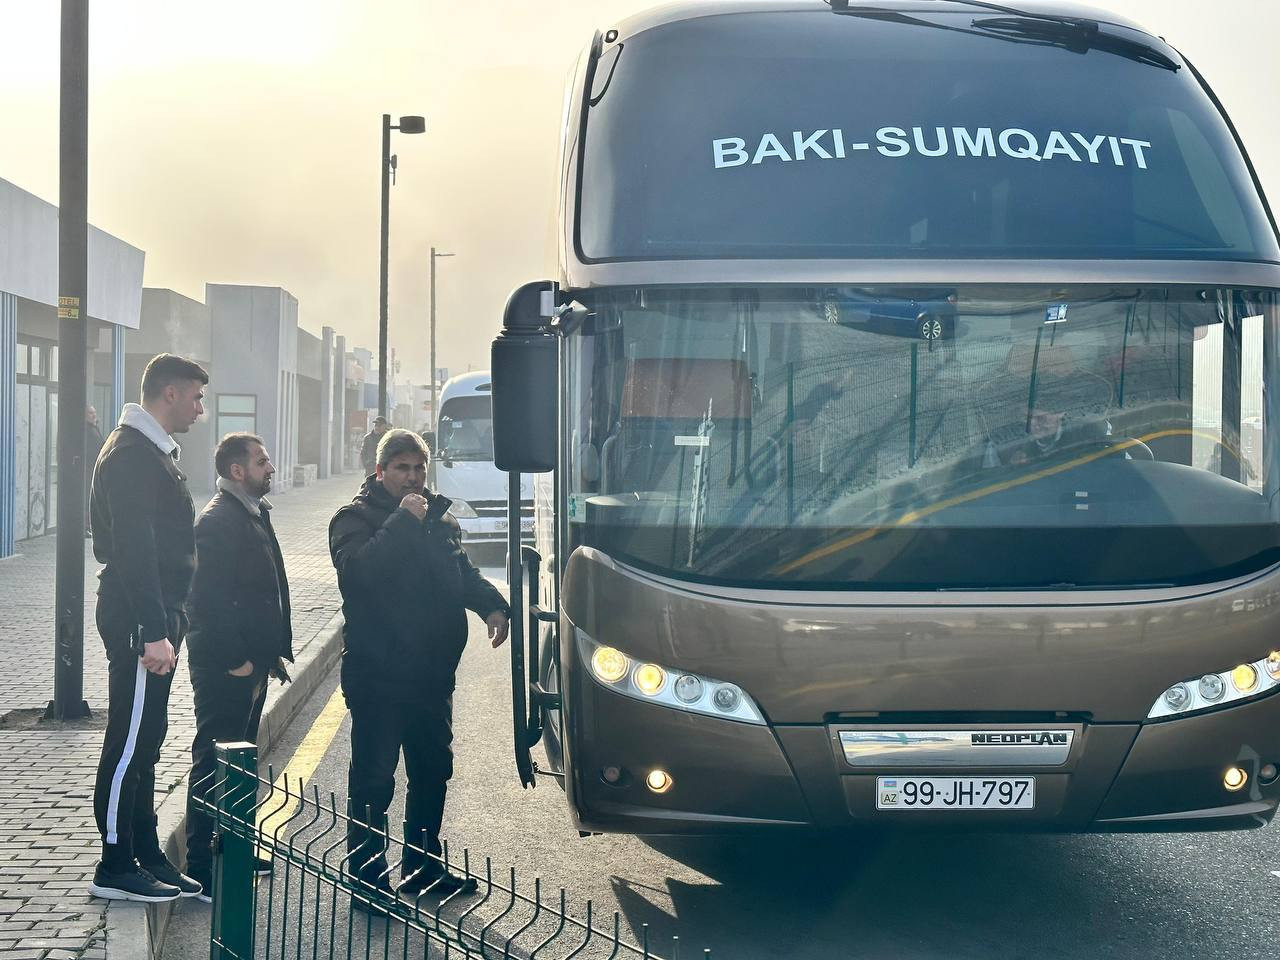 Bu gündən Sumqayıt-Bakı marşrut xətti üzrə ekspres avtobuslar sərnişinlərin xidmətindədir